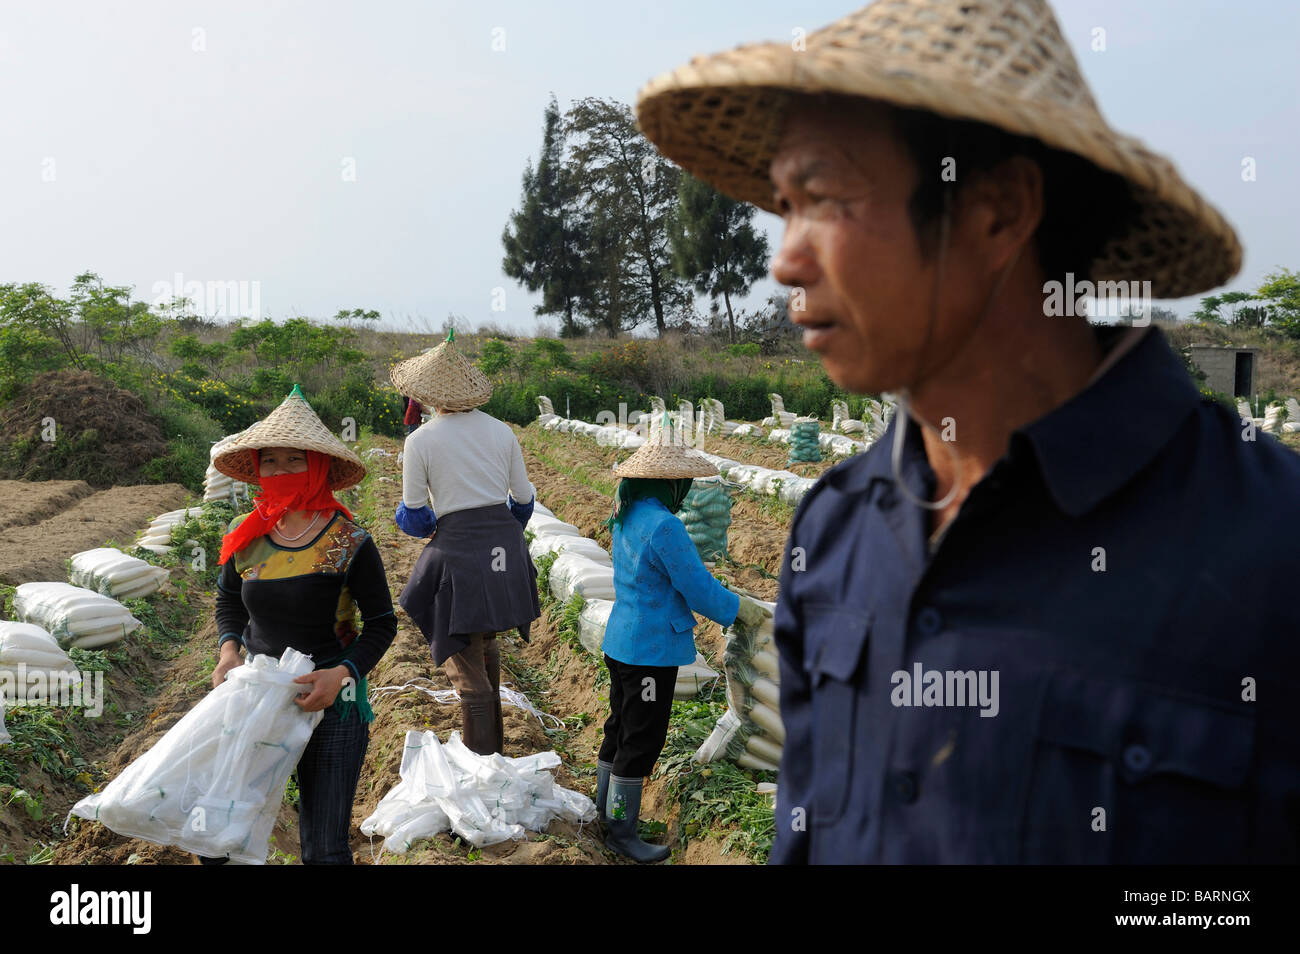 Les agriculteurs récoltent radis à la péninsule de Gulei où le PX factory sera déplacé dans la province de Fujian Fujian Chine 15 Avr 2009 Banque D'Images